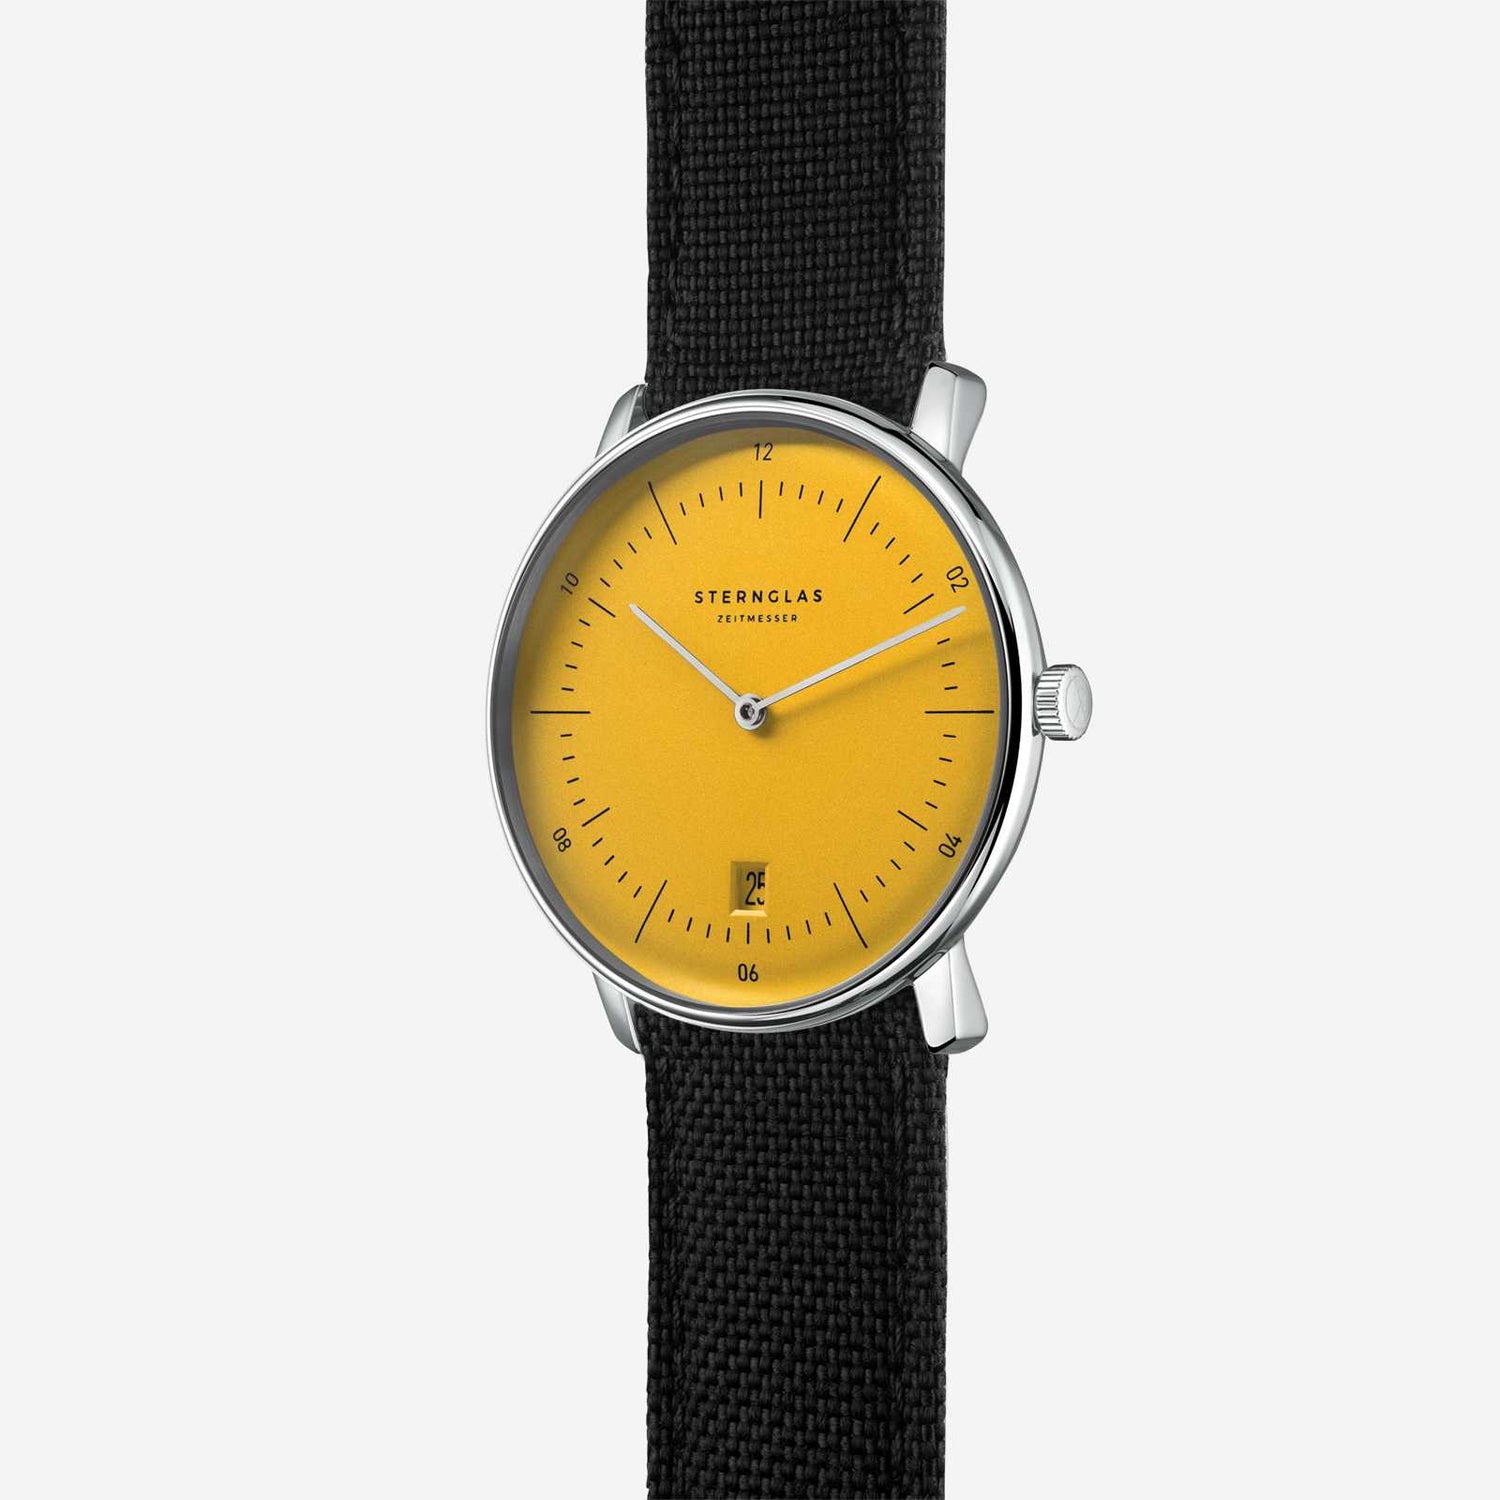 popup|Ronda Quarz-Uhrwerk|Das Uhrwerk 714 des Schweizer Traditionsherstellers Ronda sorgt für Präzision und Langlebigkeit.